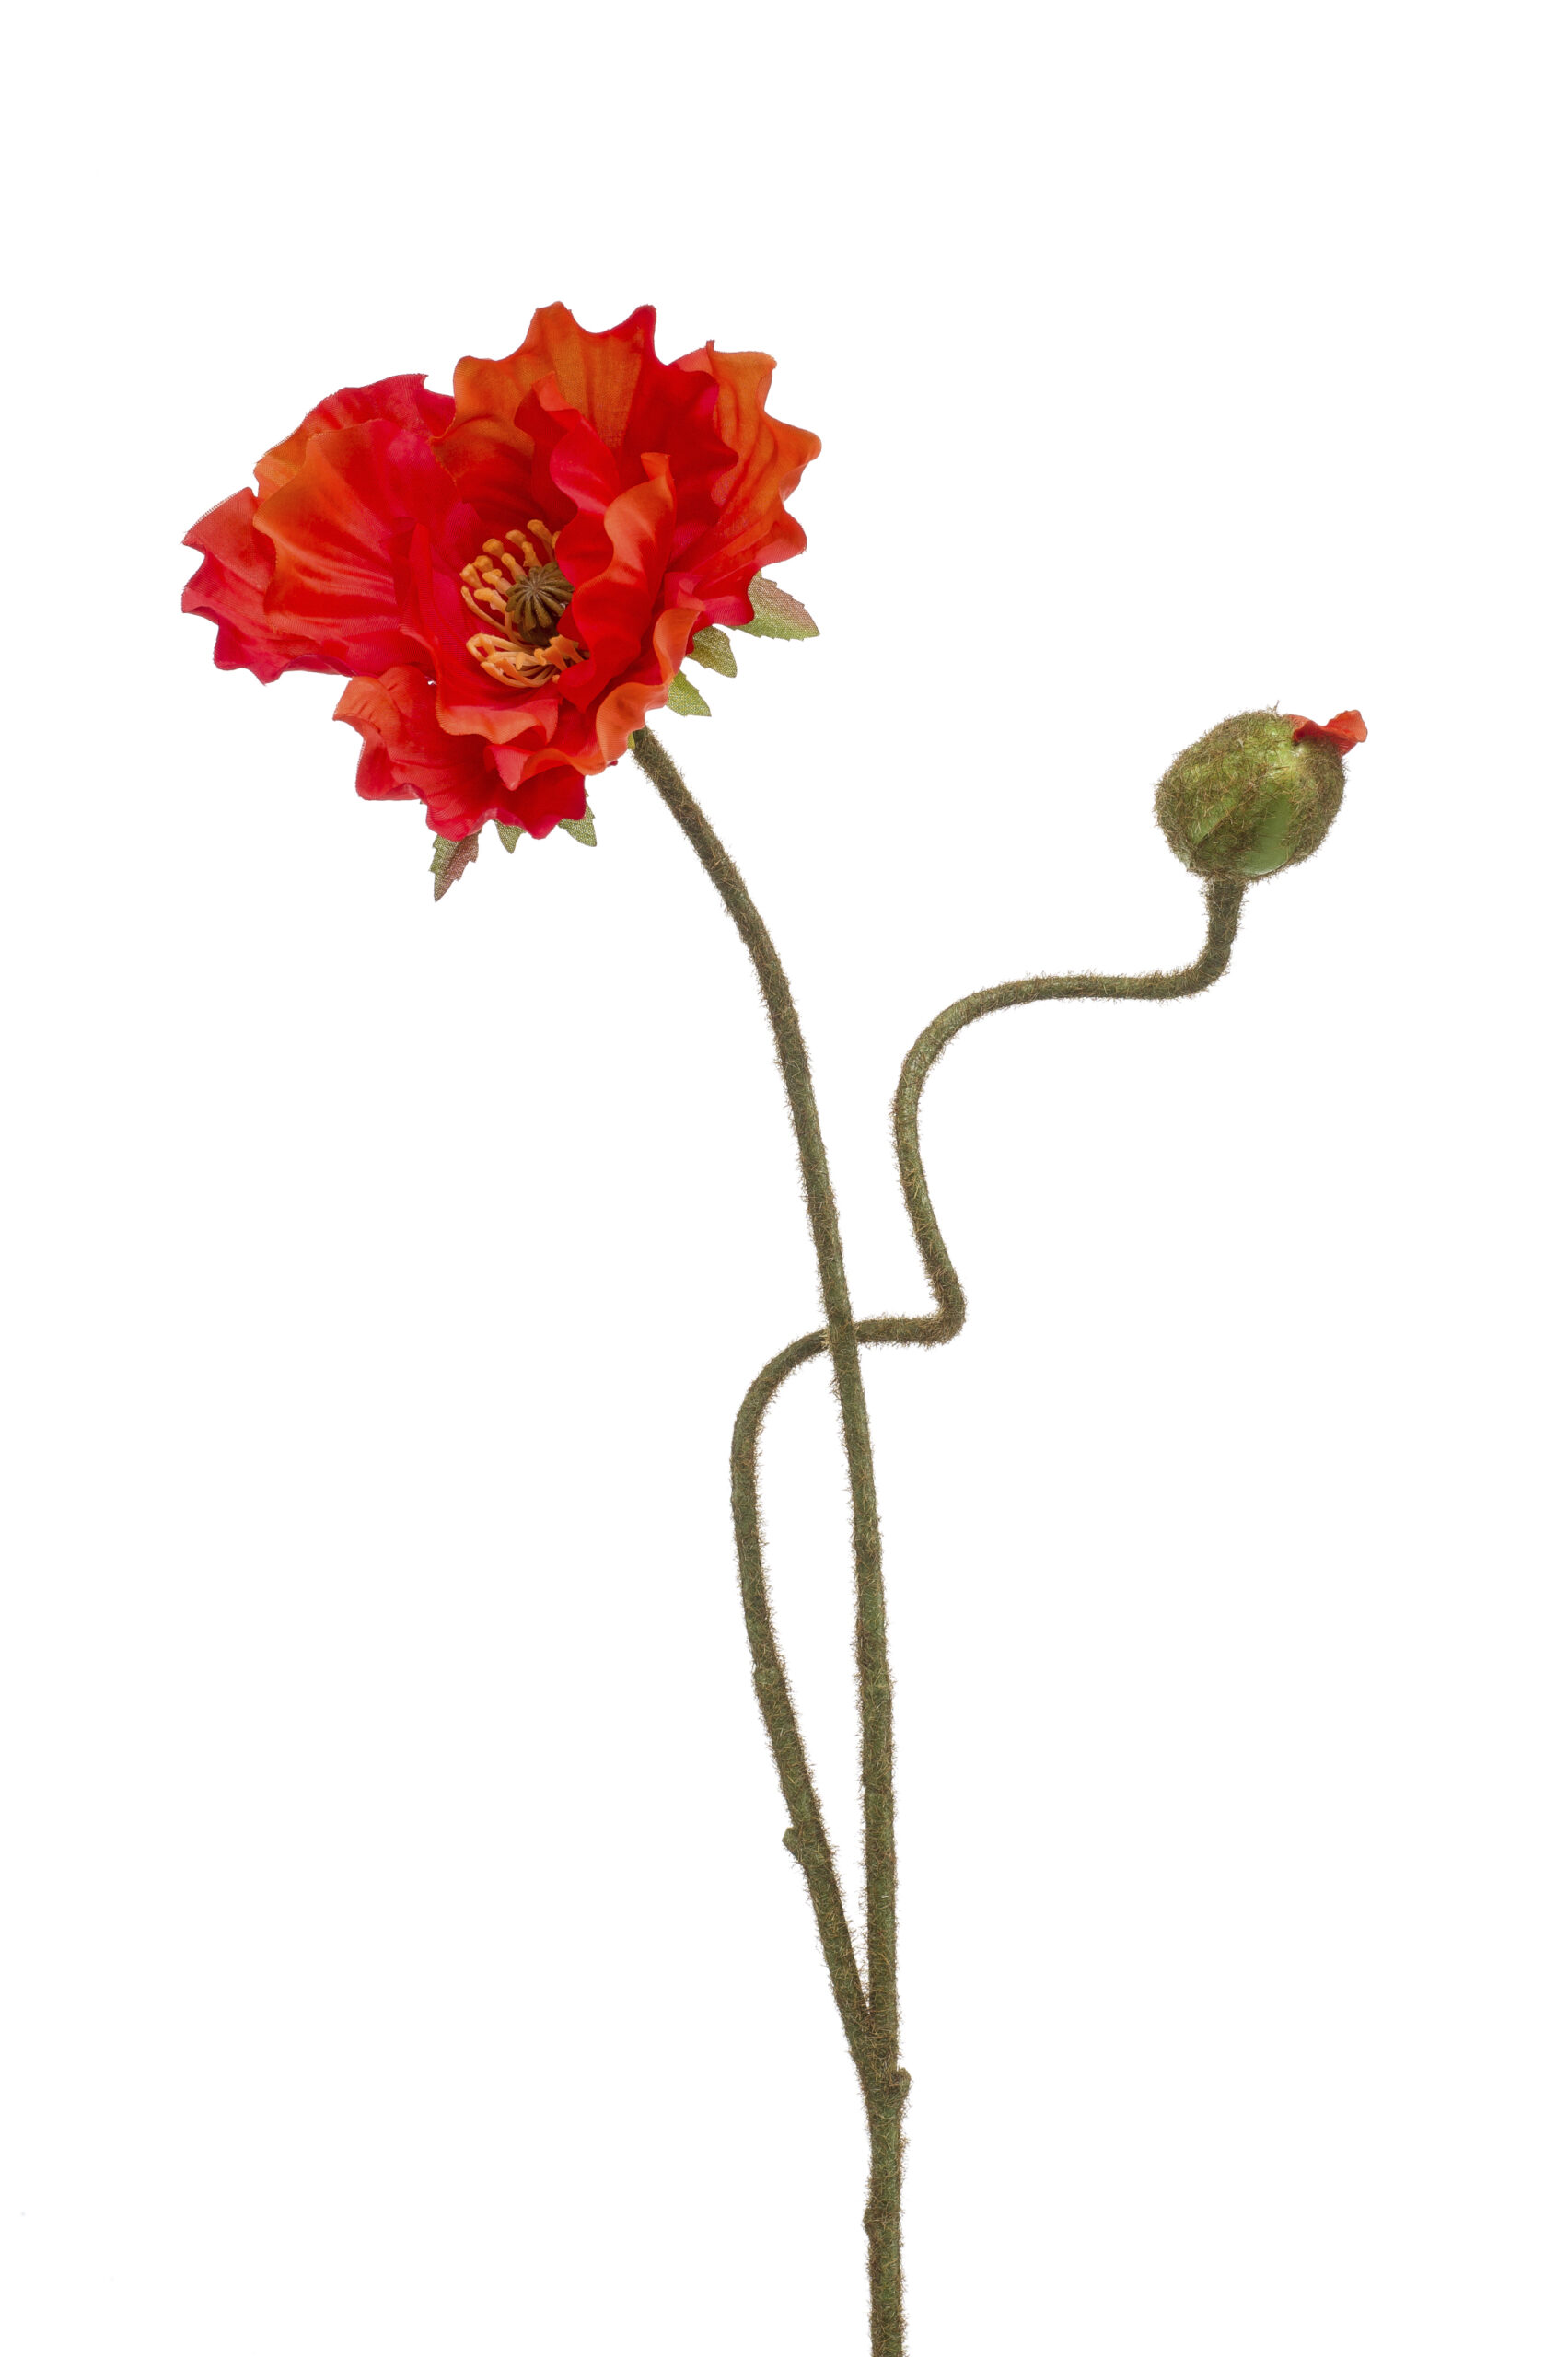 Zijden poppy 2 bloemen rood/oranje 74cm